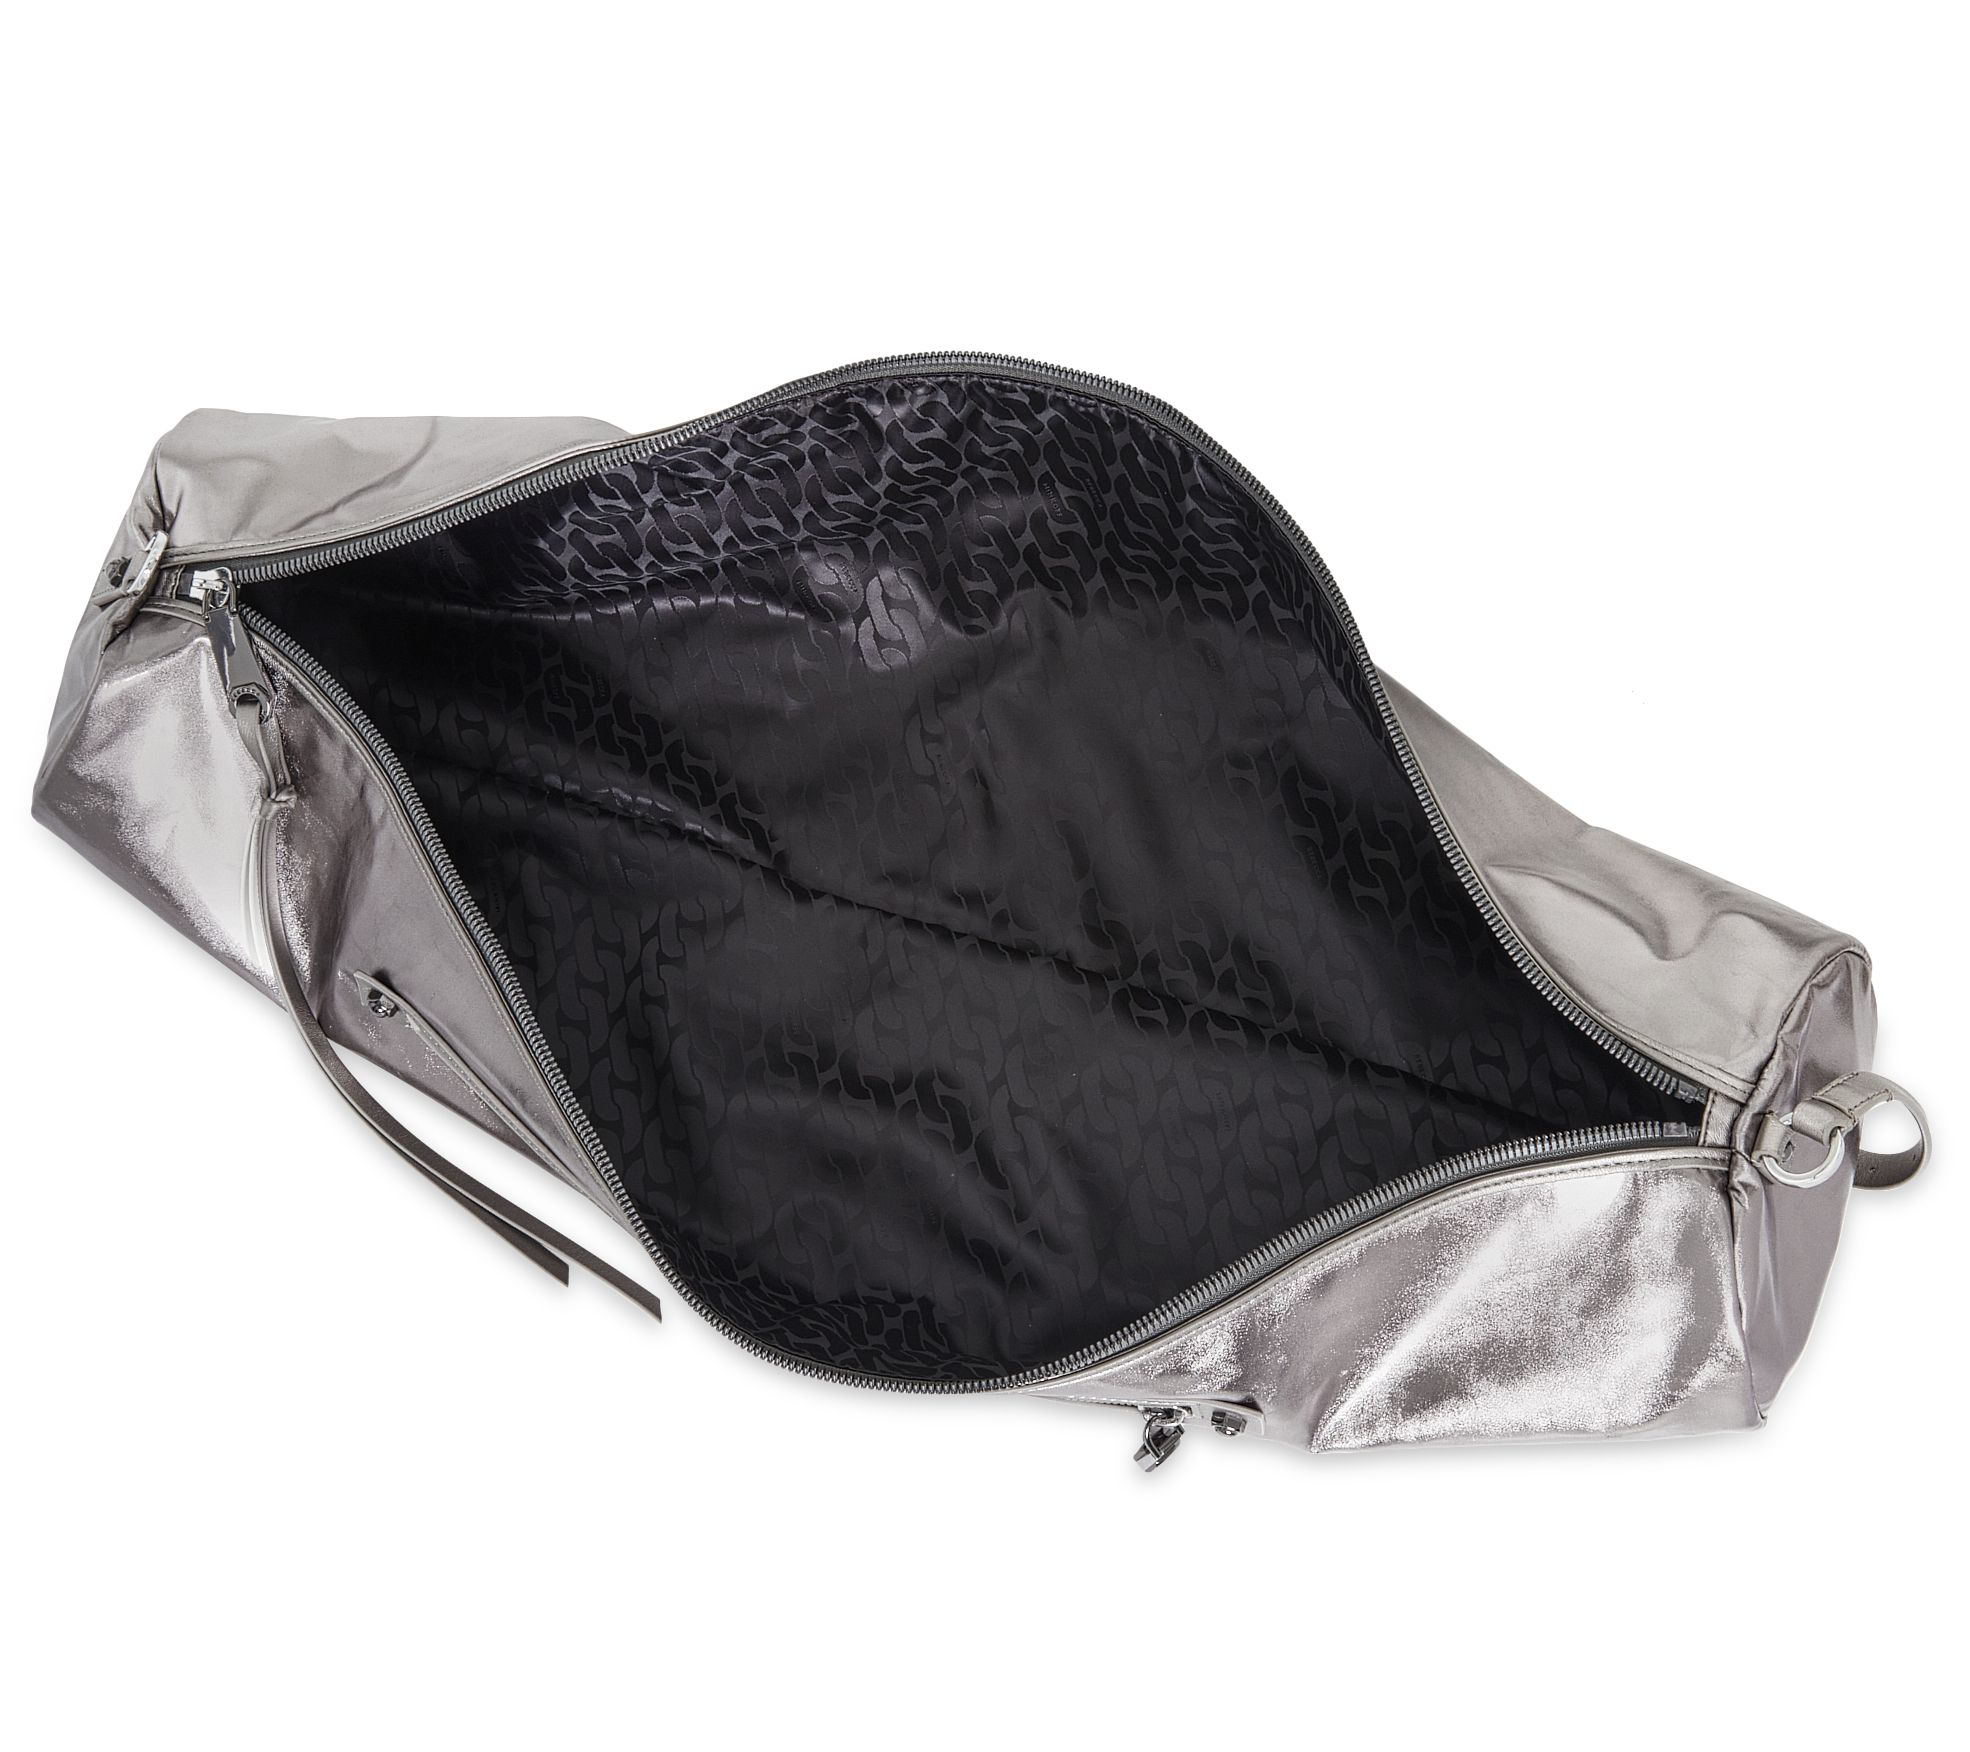 Yoga Mat Bag – The Sak